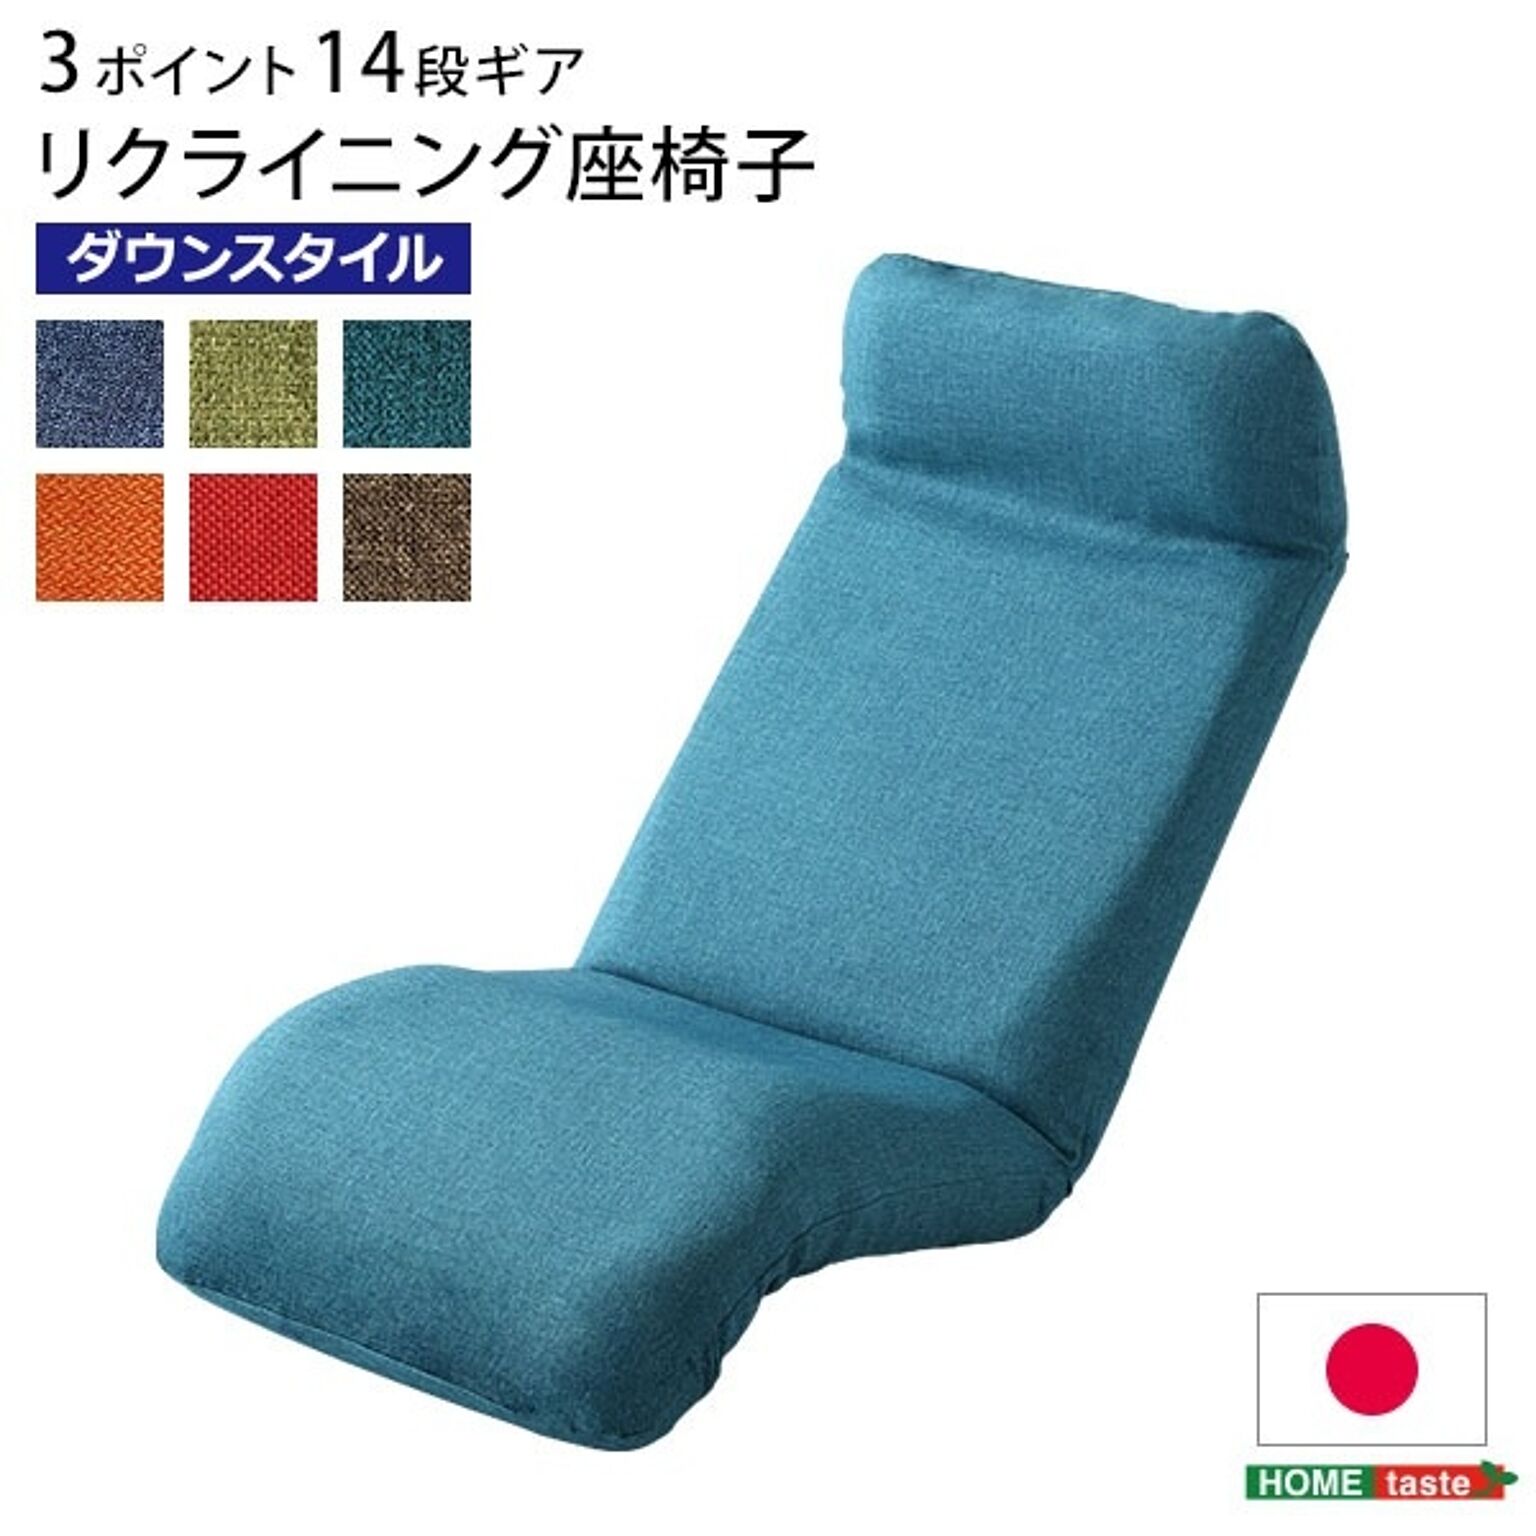 リクライニング 座椅子/フロアチェア 【ダウンスタイル グリーン】 幅52cm 洗えるカバー付き 日本製【代引不可】